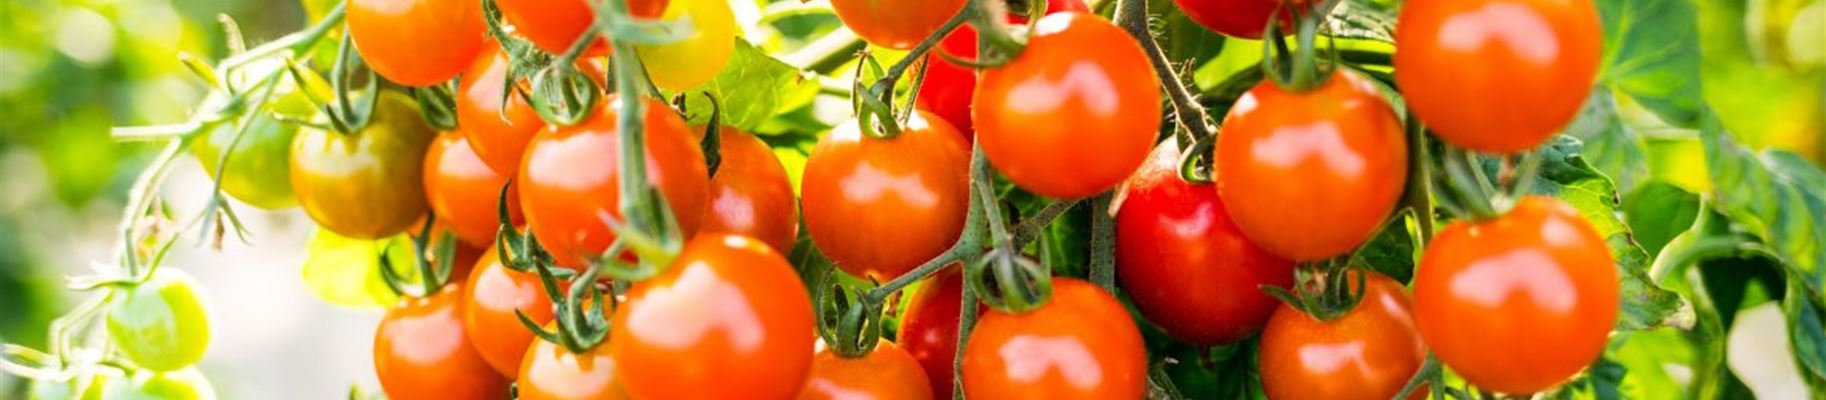 Tomaten-färben-sich-beitragsbildformat-1170x780.jpg